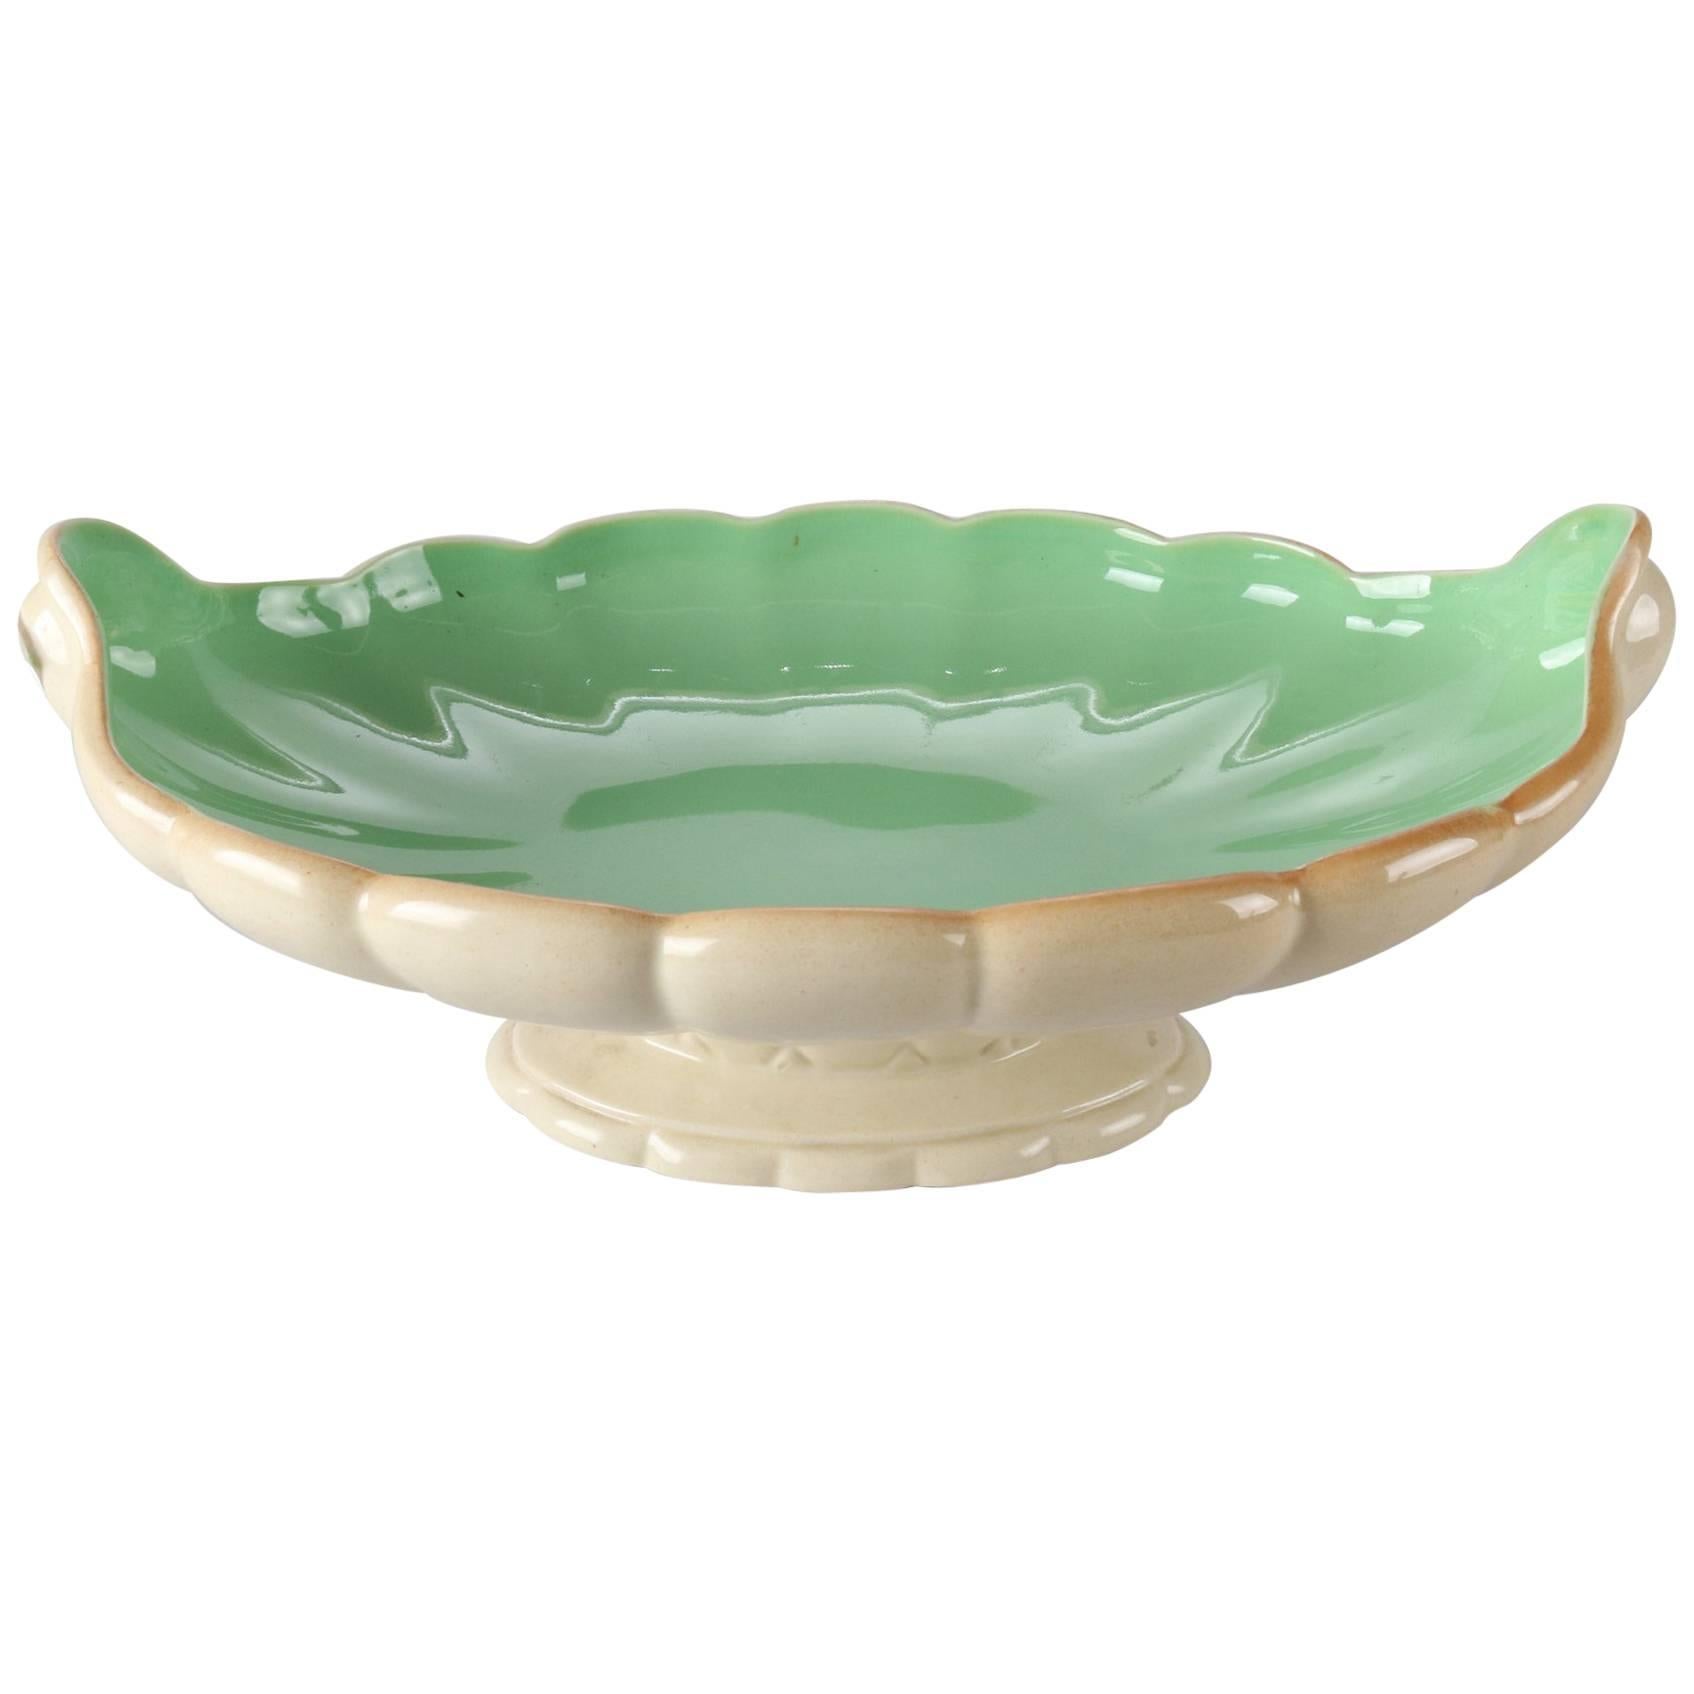 Antique Art Nouveau Cowan Art Pottery Scallop Form Pedestal Center Console Bowl